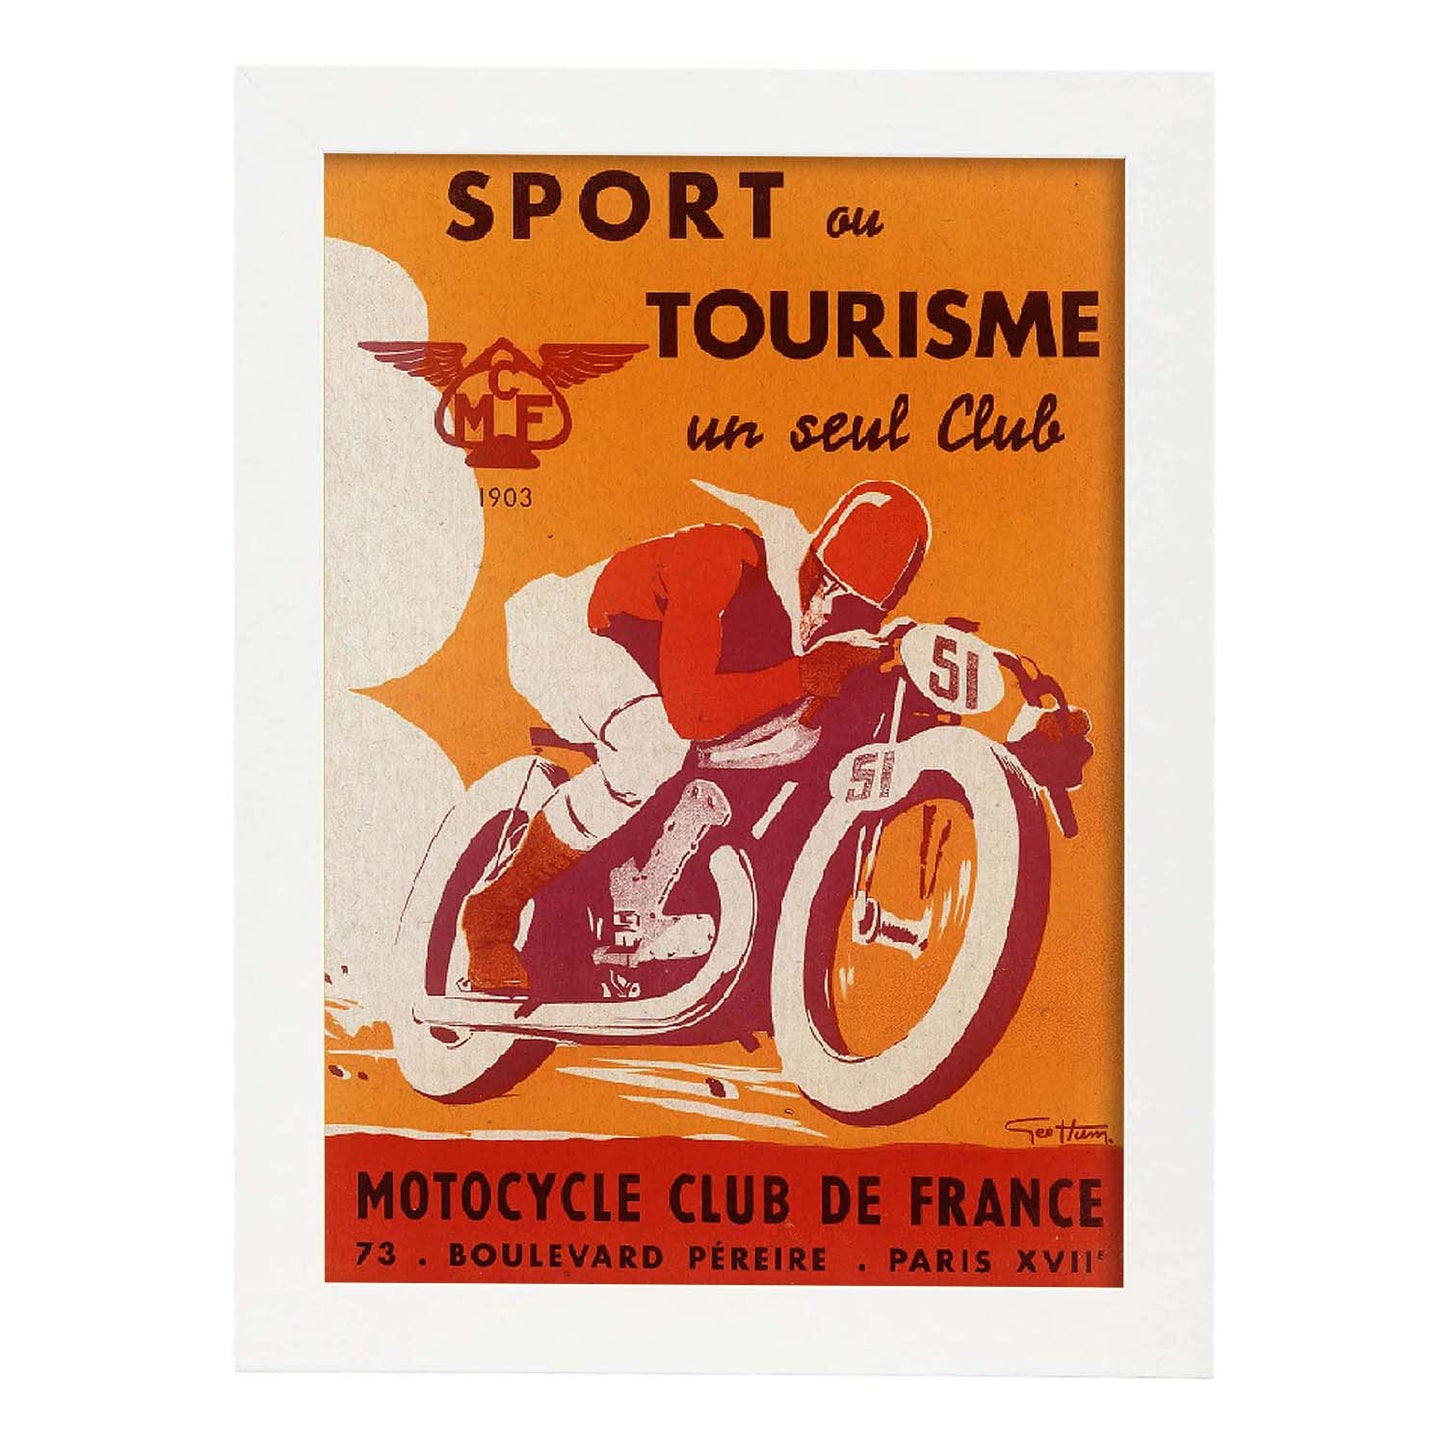 Poster vintage. Anuncio vintage del Sport ou Tourisme un seul Club Motorcycle Club de France.-Artwork-Nacnic-A3-Marco Blanco-Nacnic Estudio SL